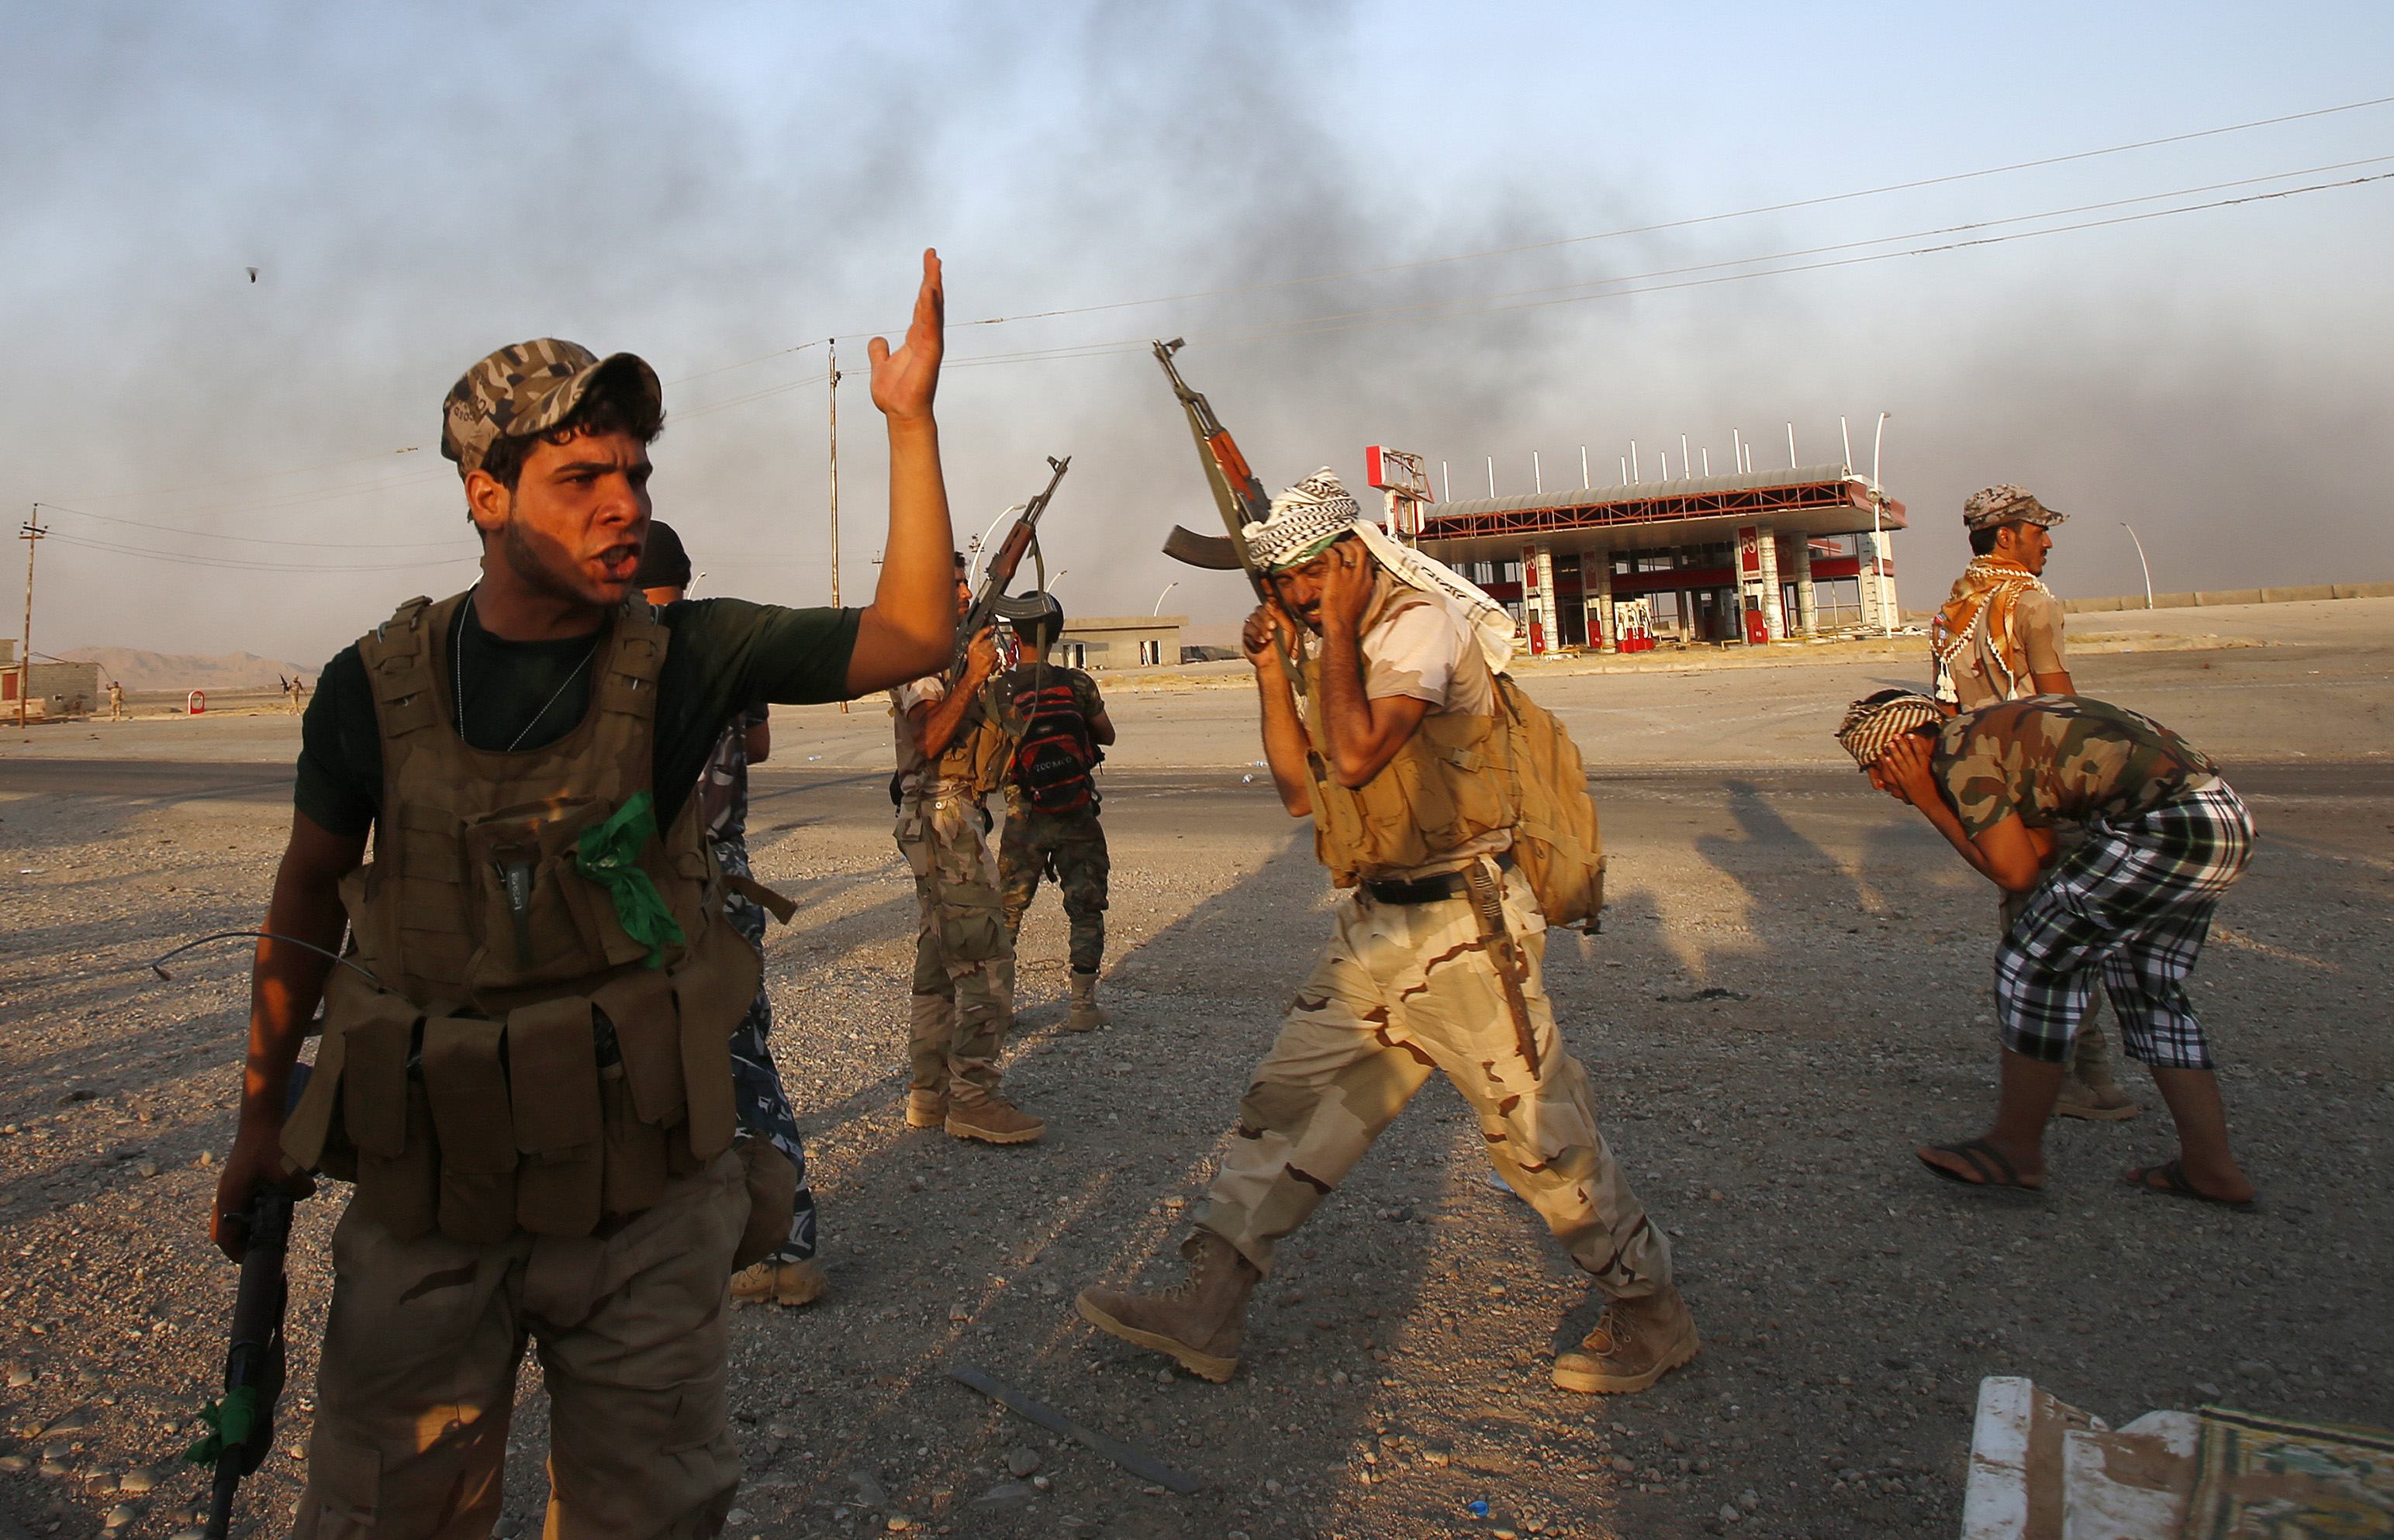 Familiares de soldados secuestrados por Estado Islámico irrumpen en Parlamento iraquí